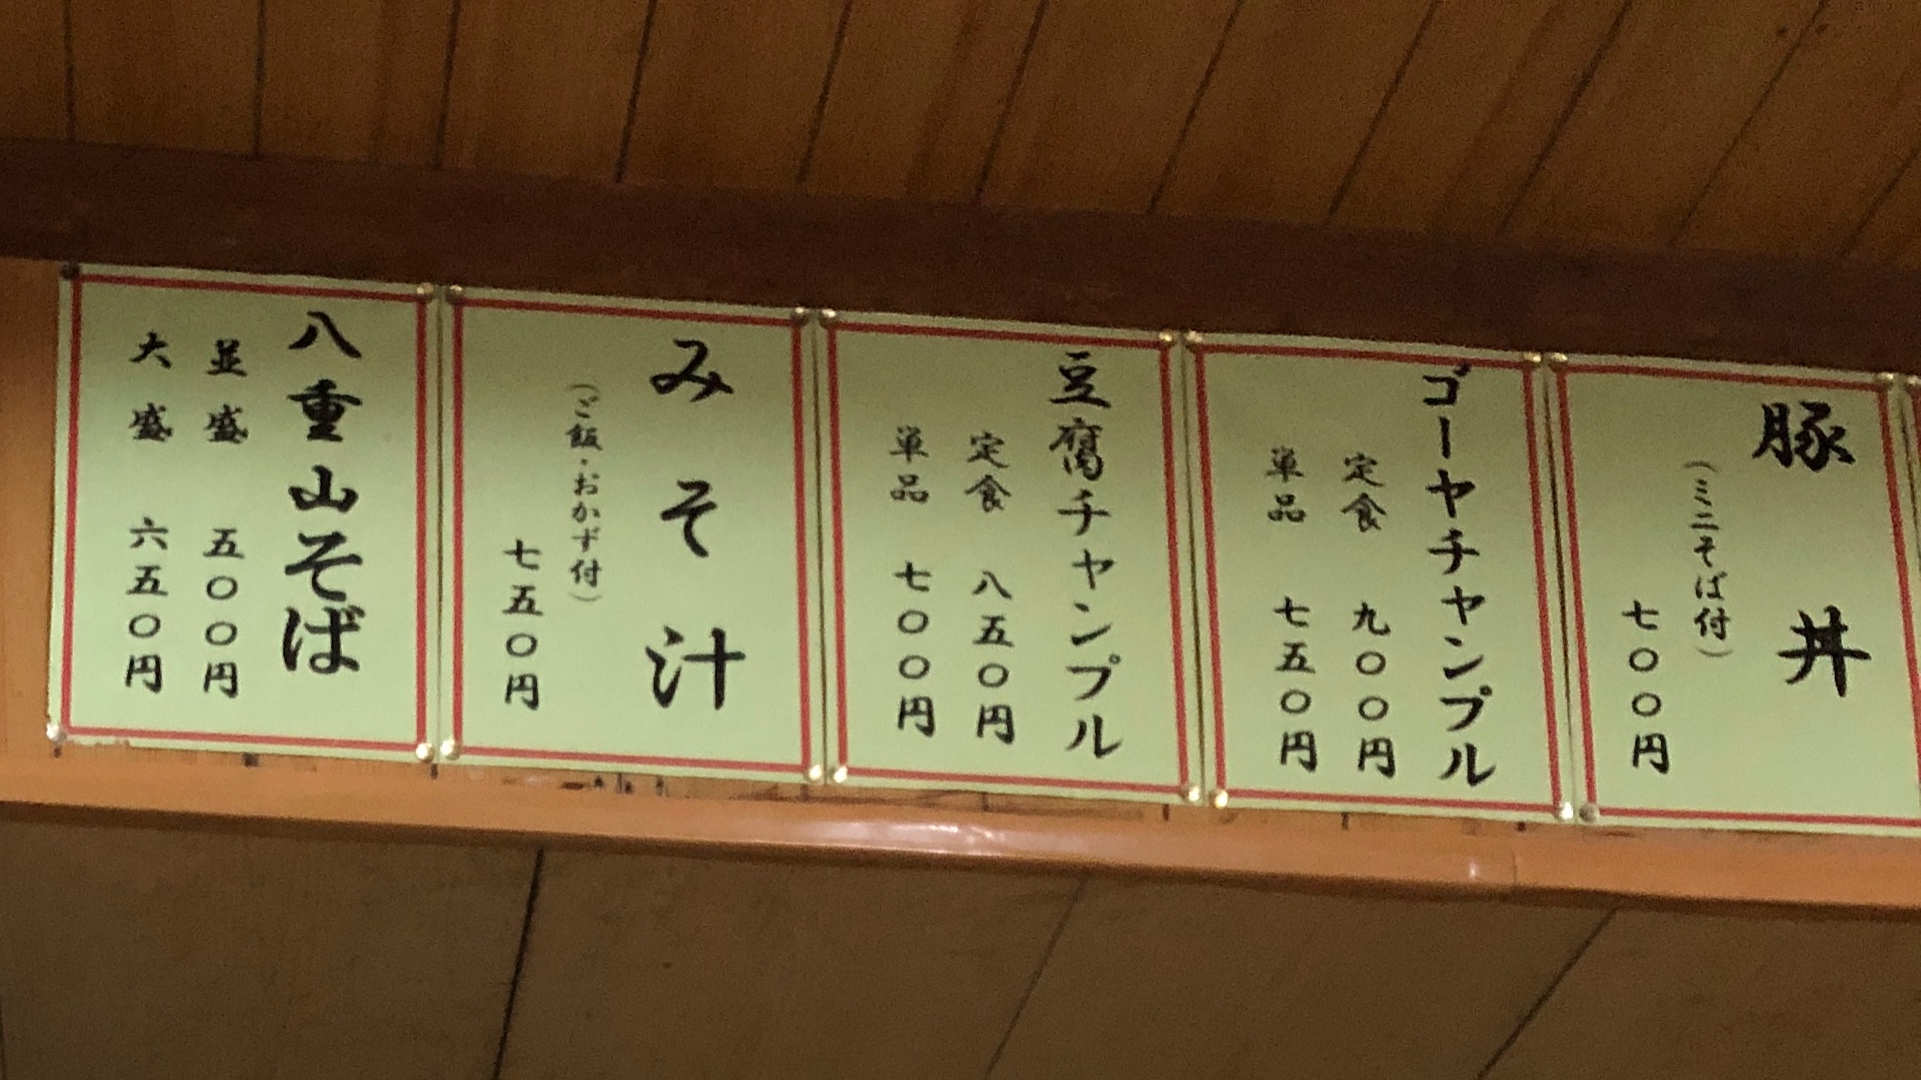 Okinawa Style: Die Miso-Suppe wird hier als Hauptspeise aufgelistet.